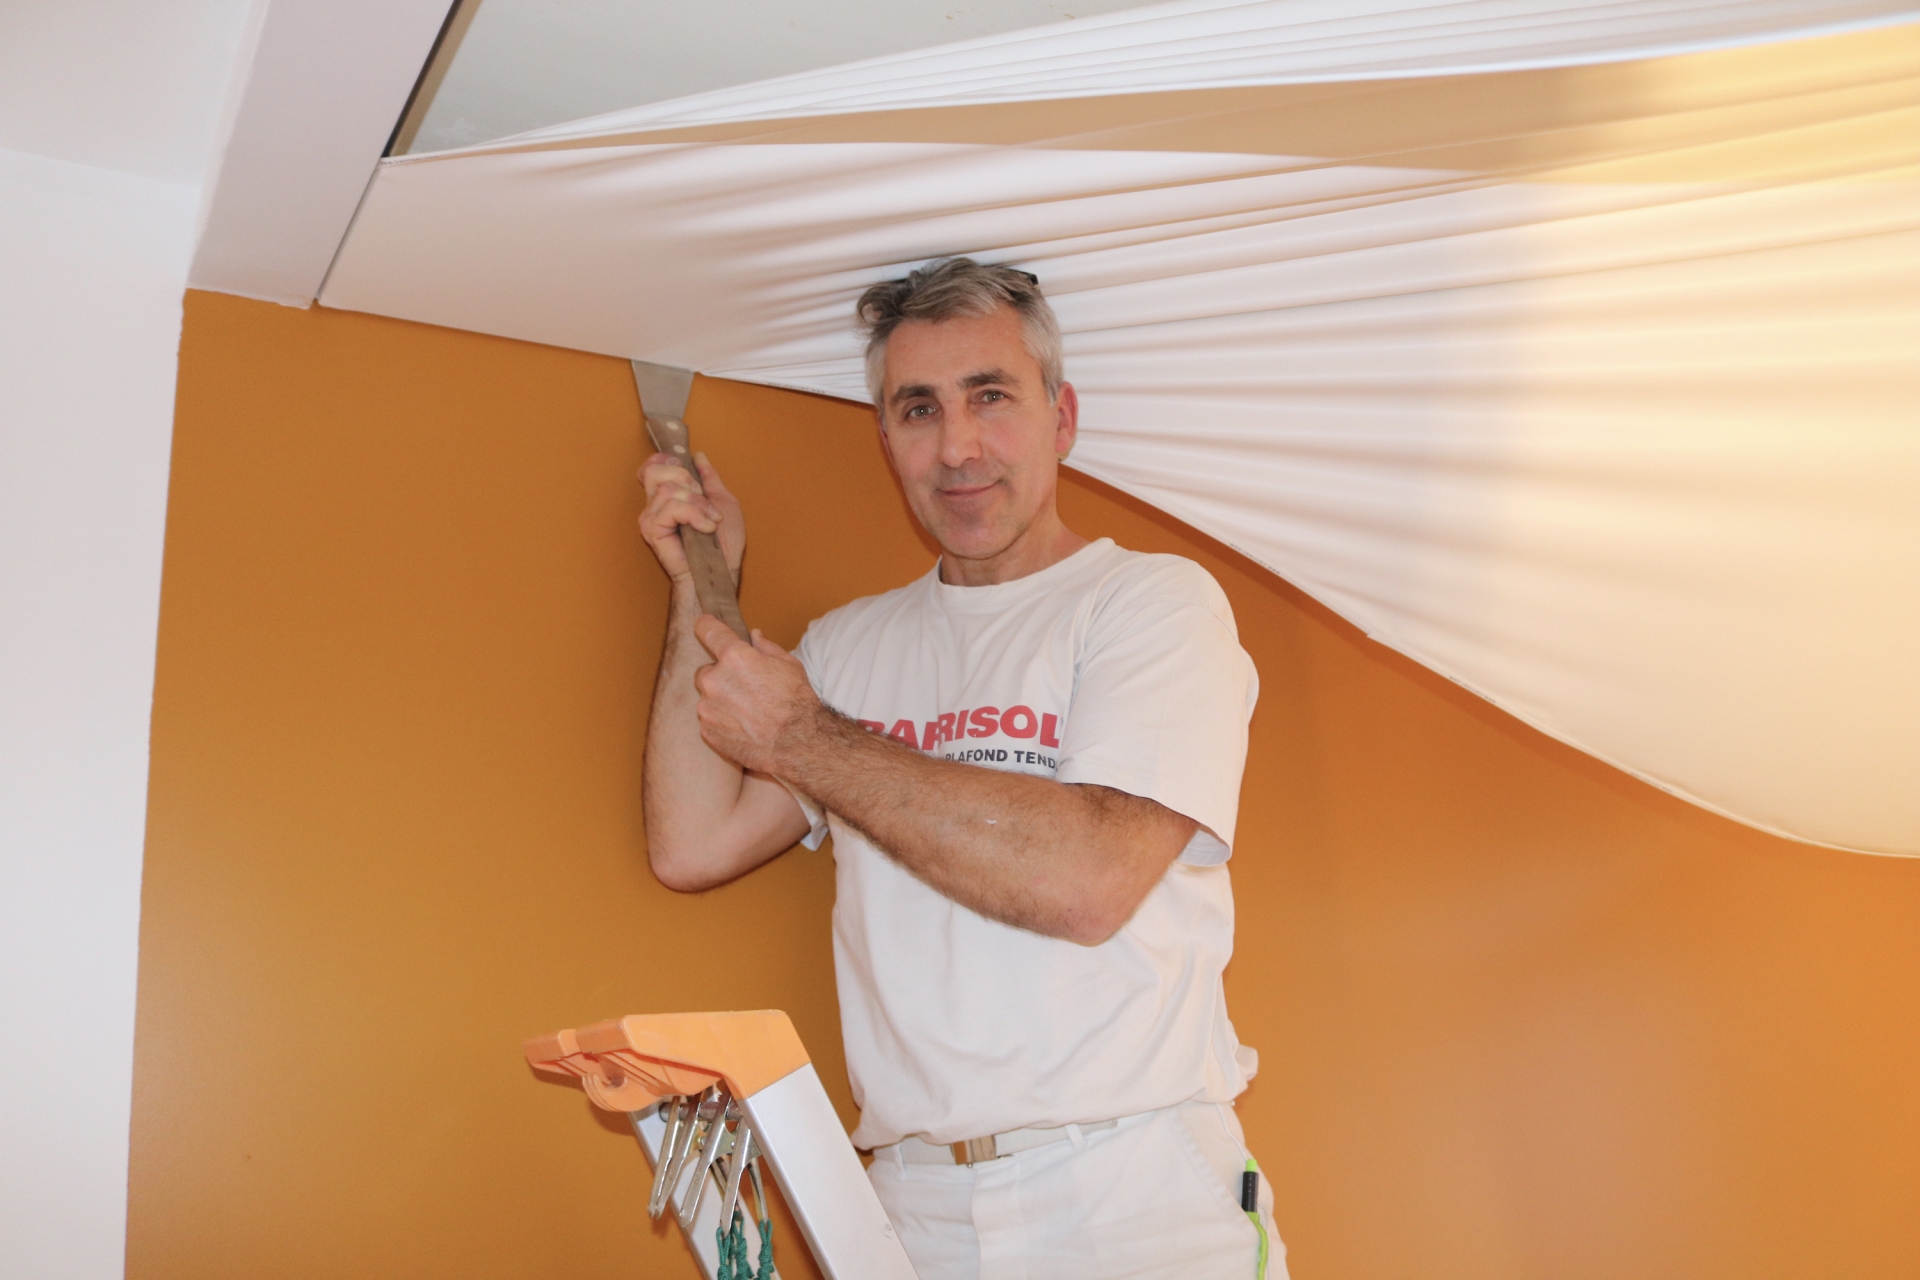 L’Atelier Michel Rivaud, votre partenaire en plafond tendu depuis dix ans déjà !